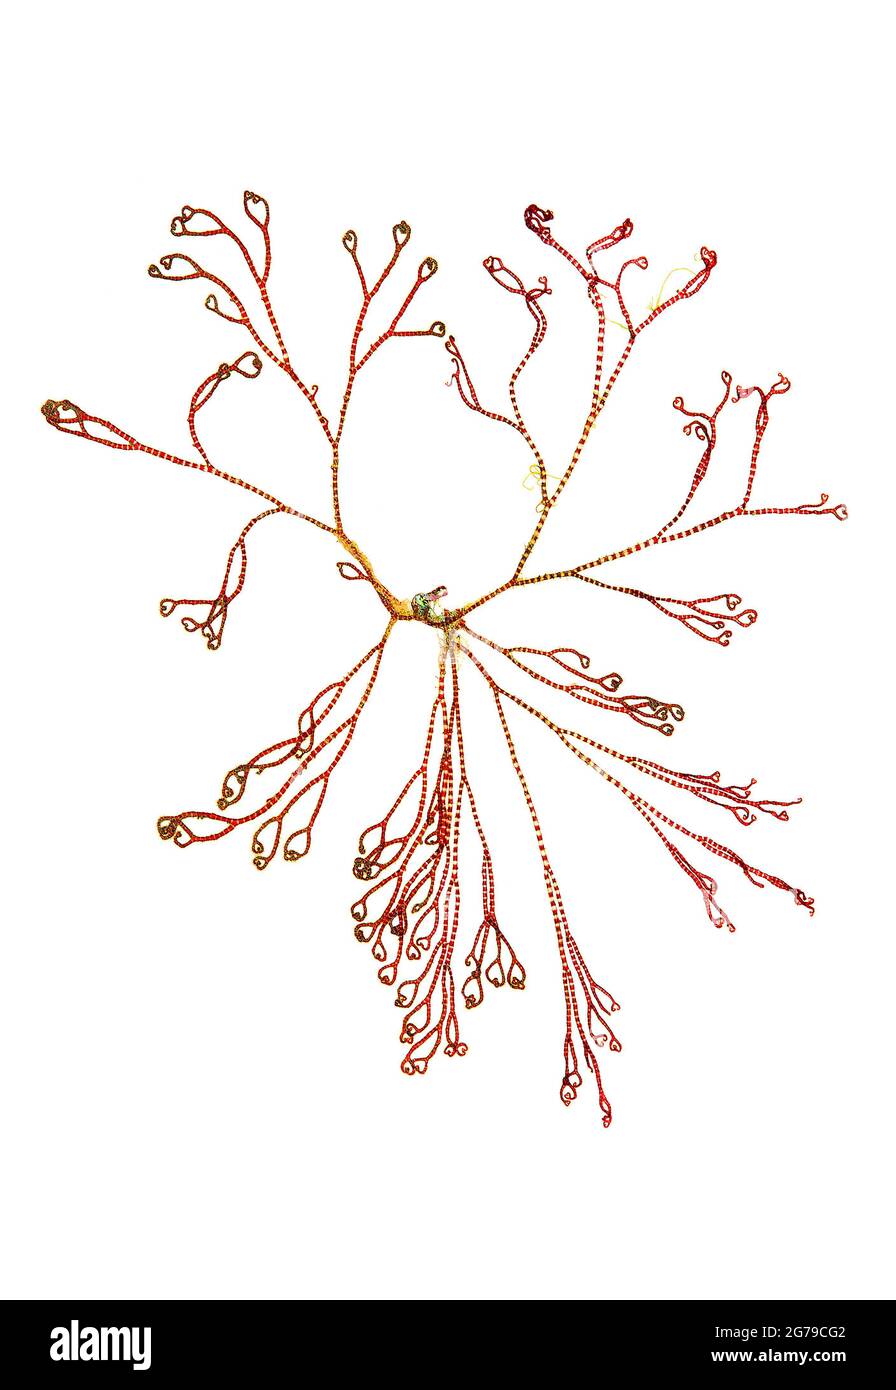 Ceramium ciliatum (J.Ellis) Ducluzeau, red alga (Florideophyceae) Stock Photo